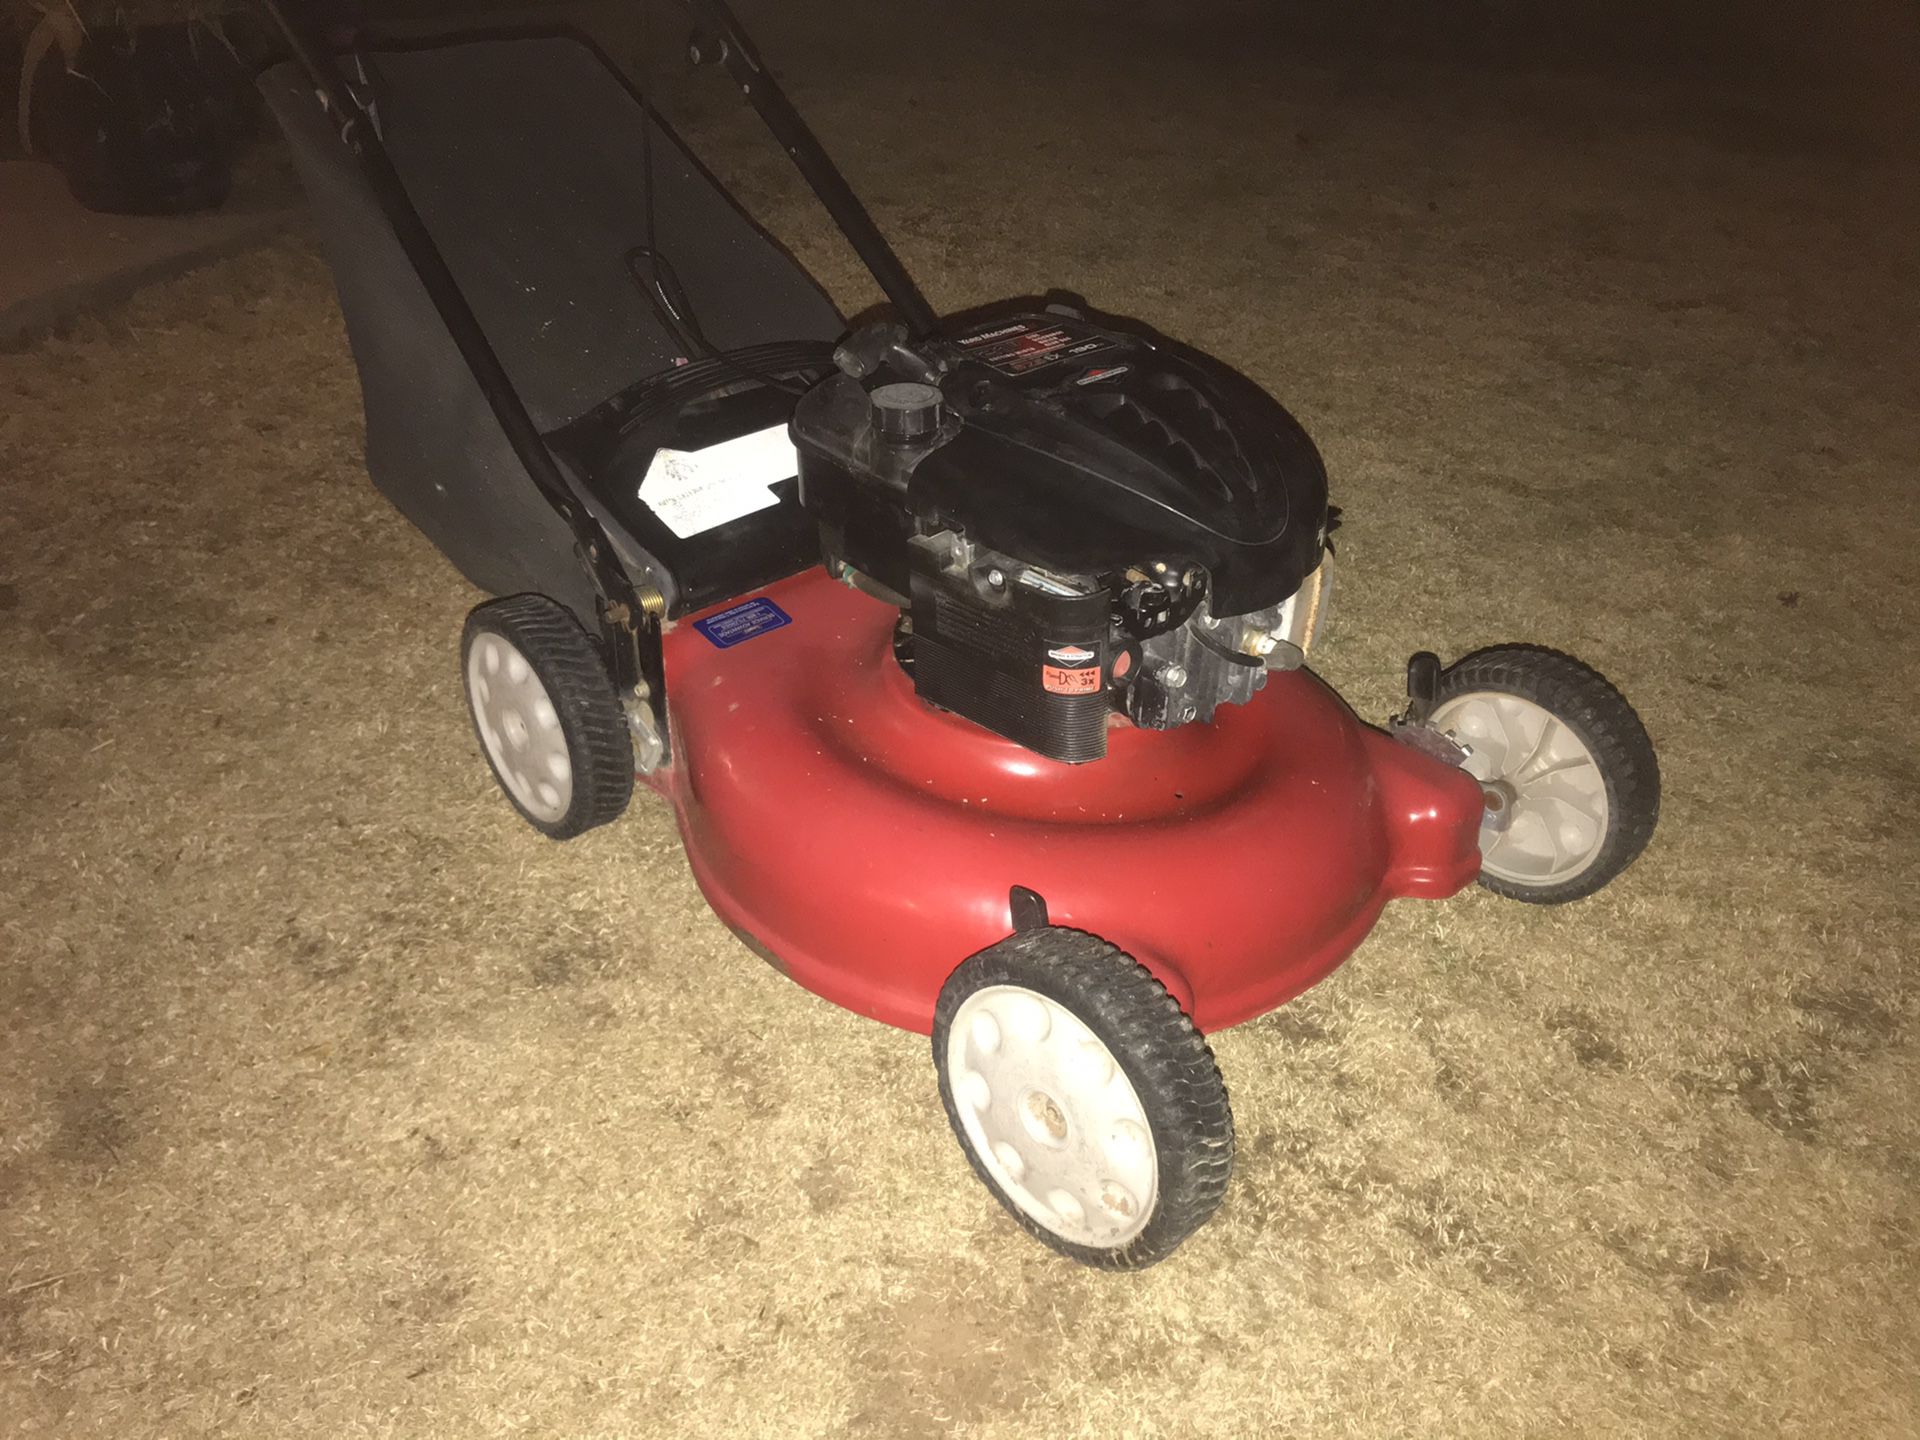 Troy Bilt 6.75 hp lawn mower